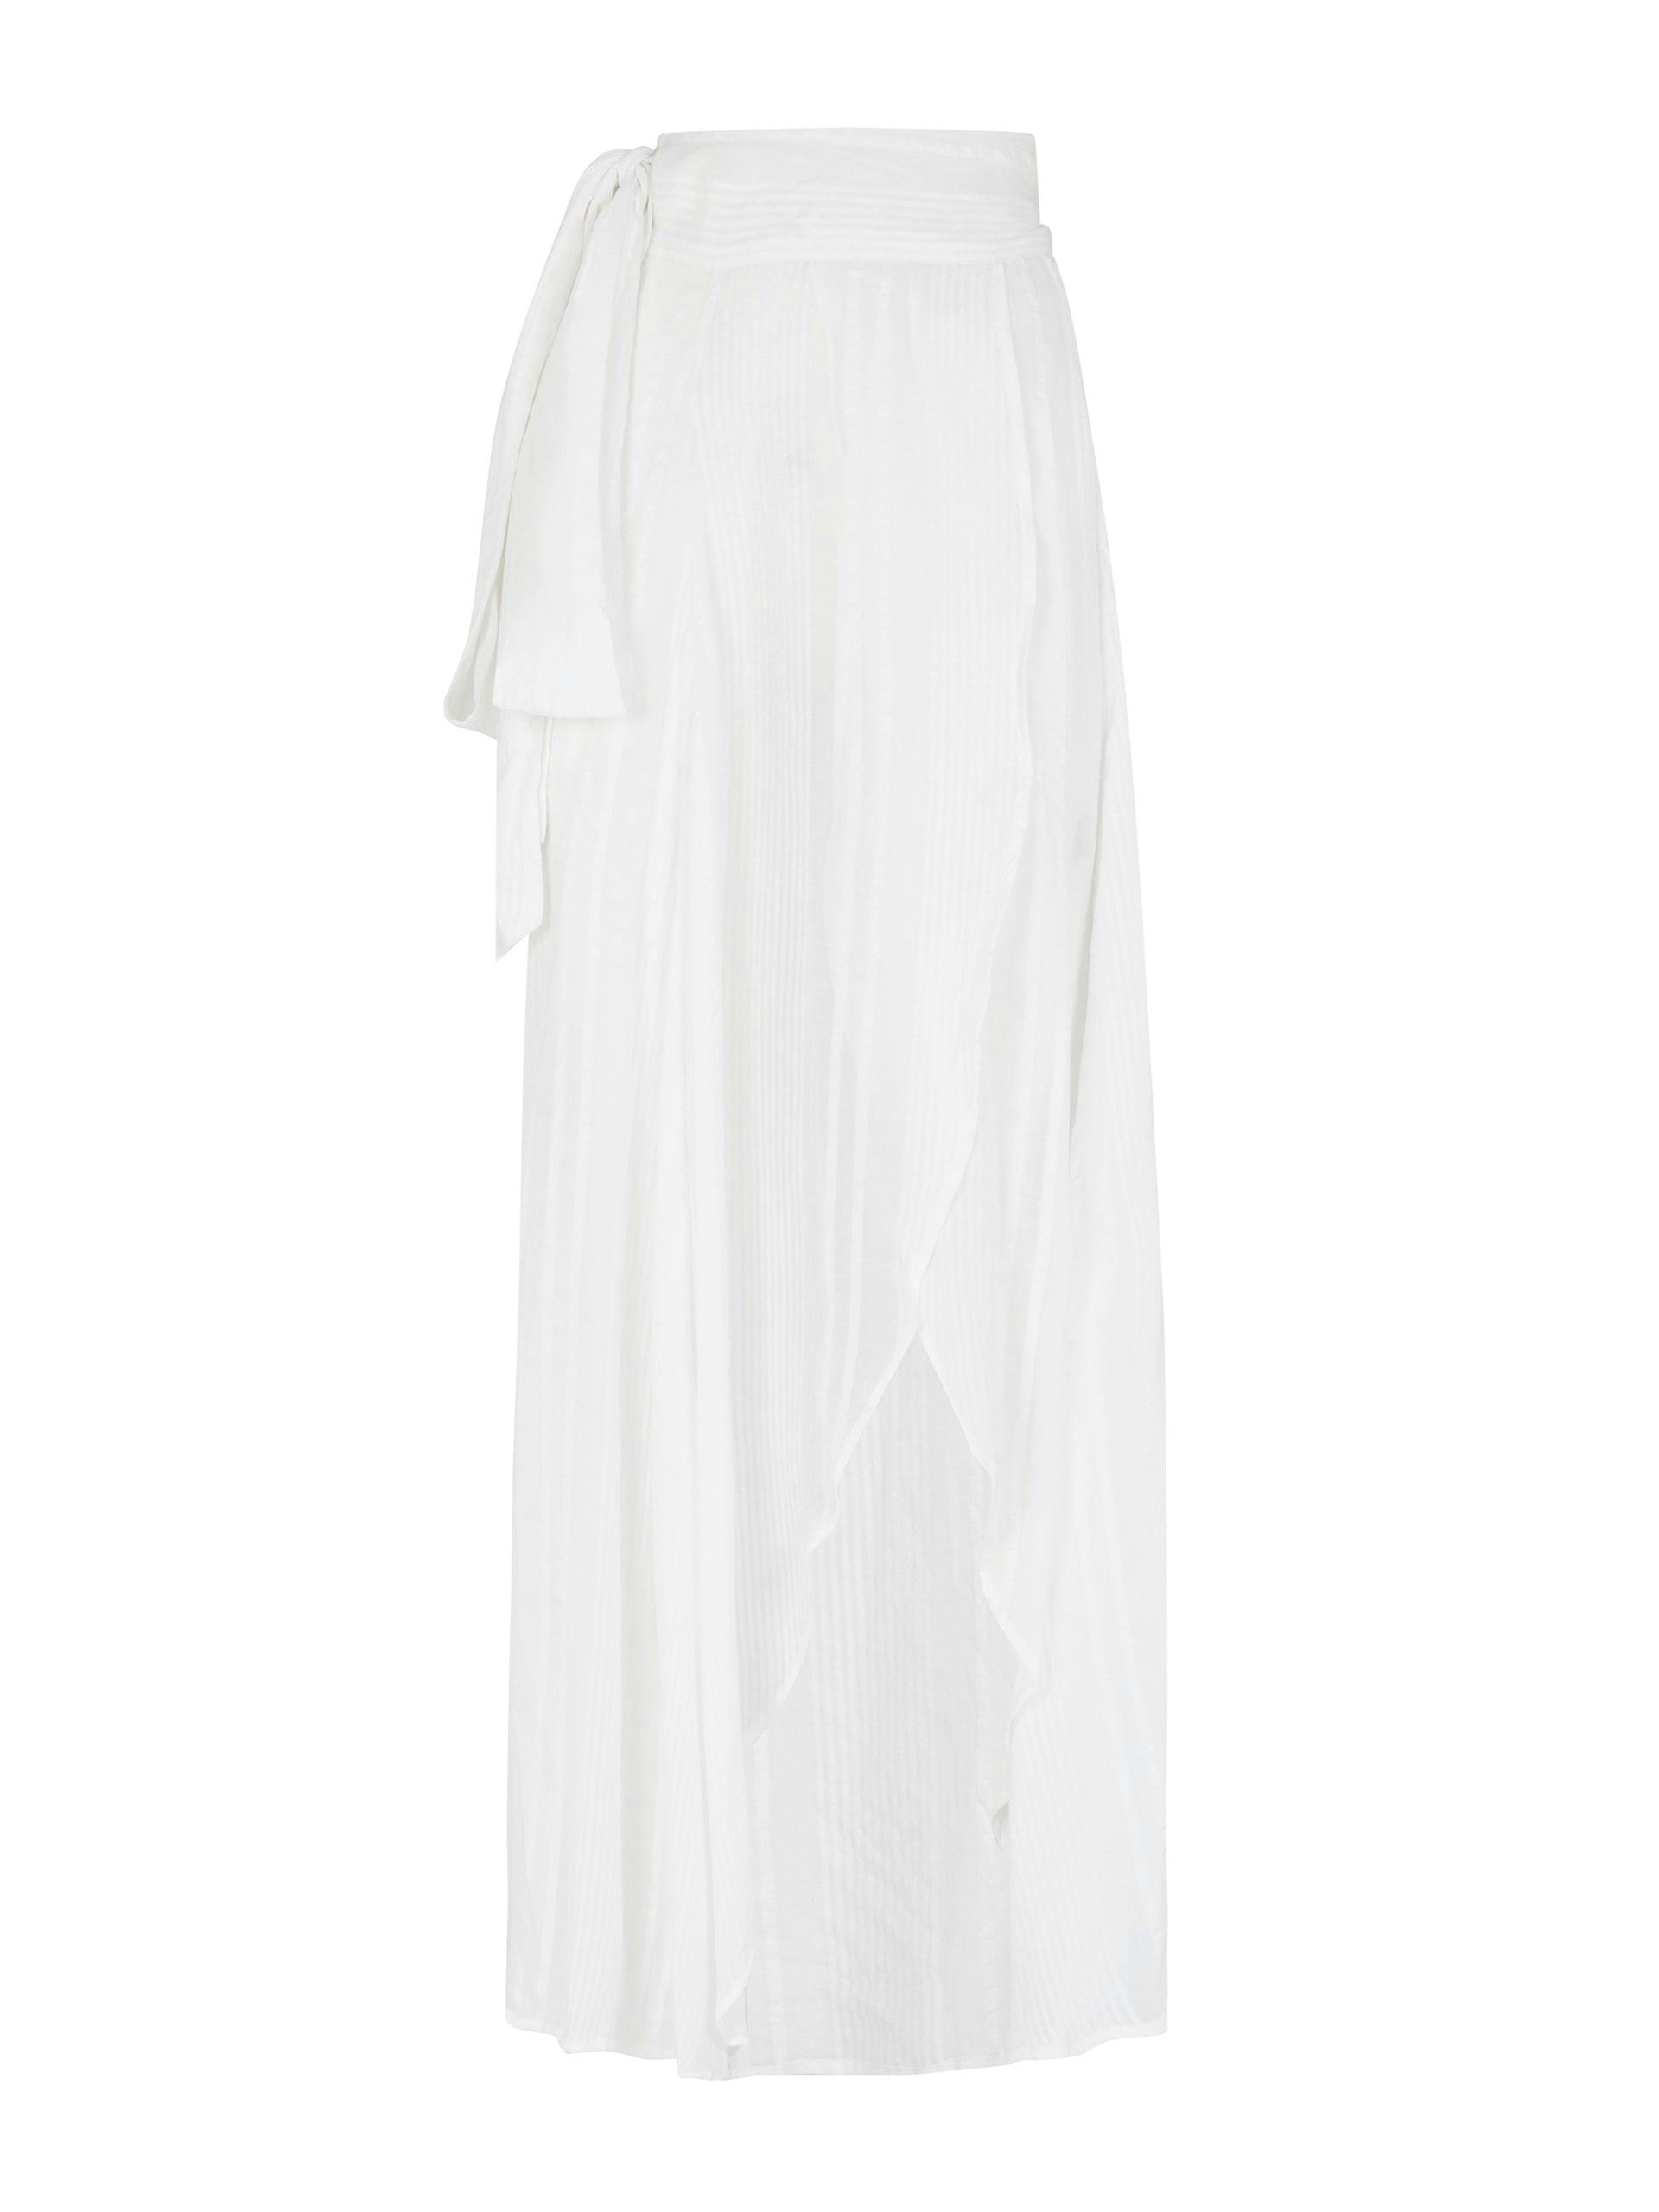 White Milu skirt in Lyocell Tencel